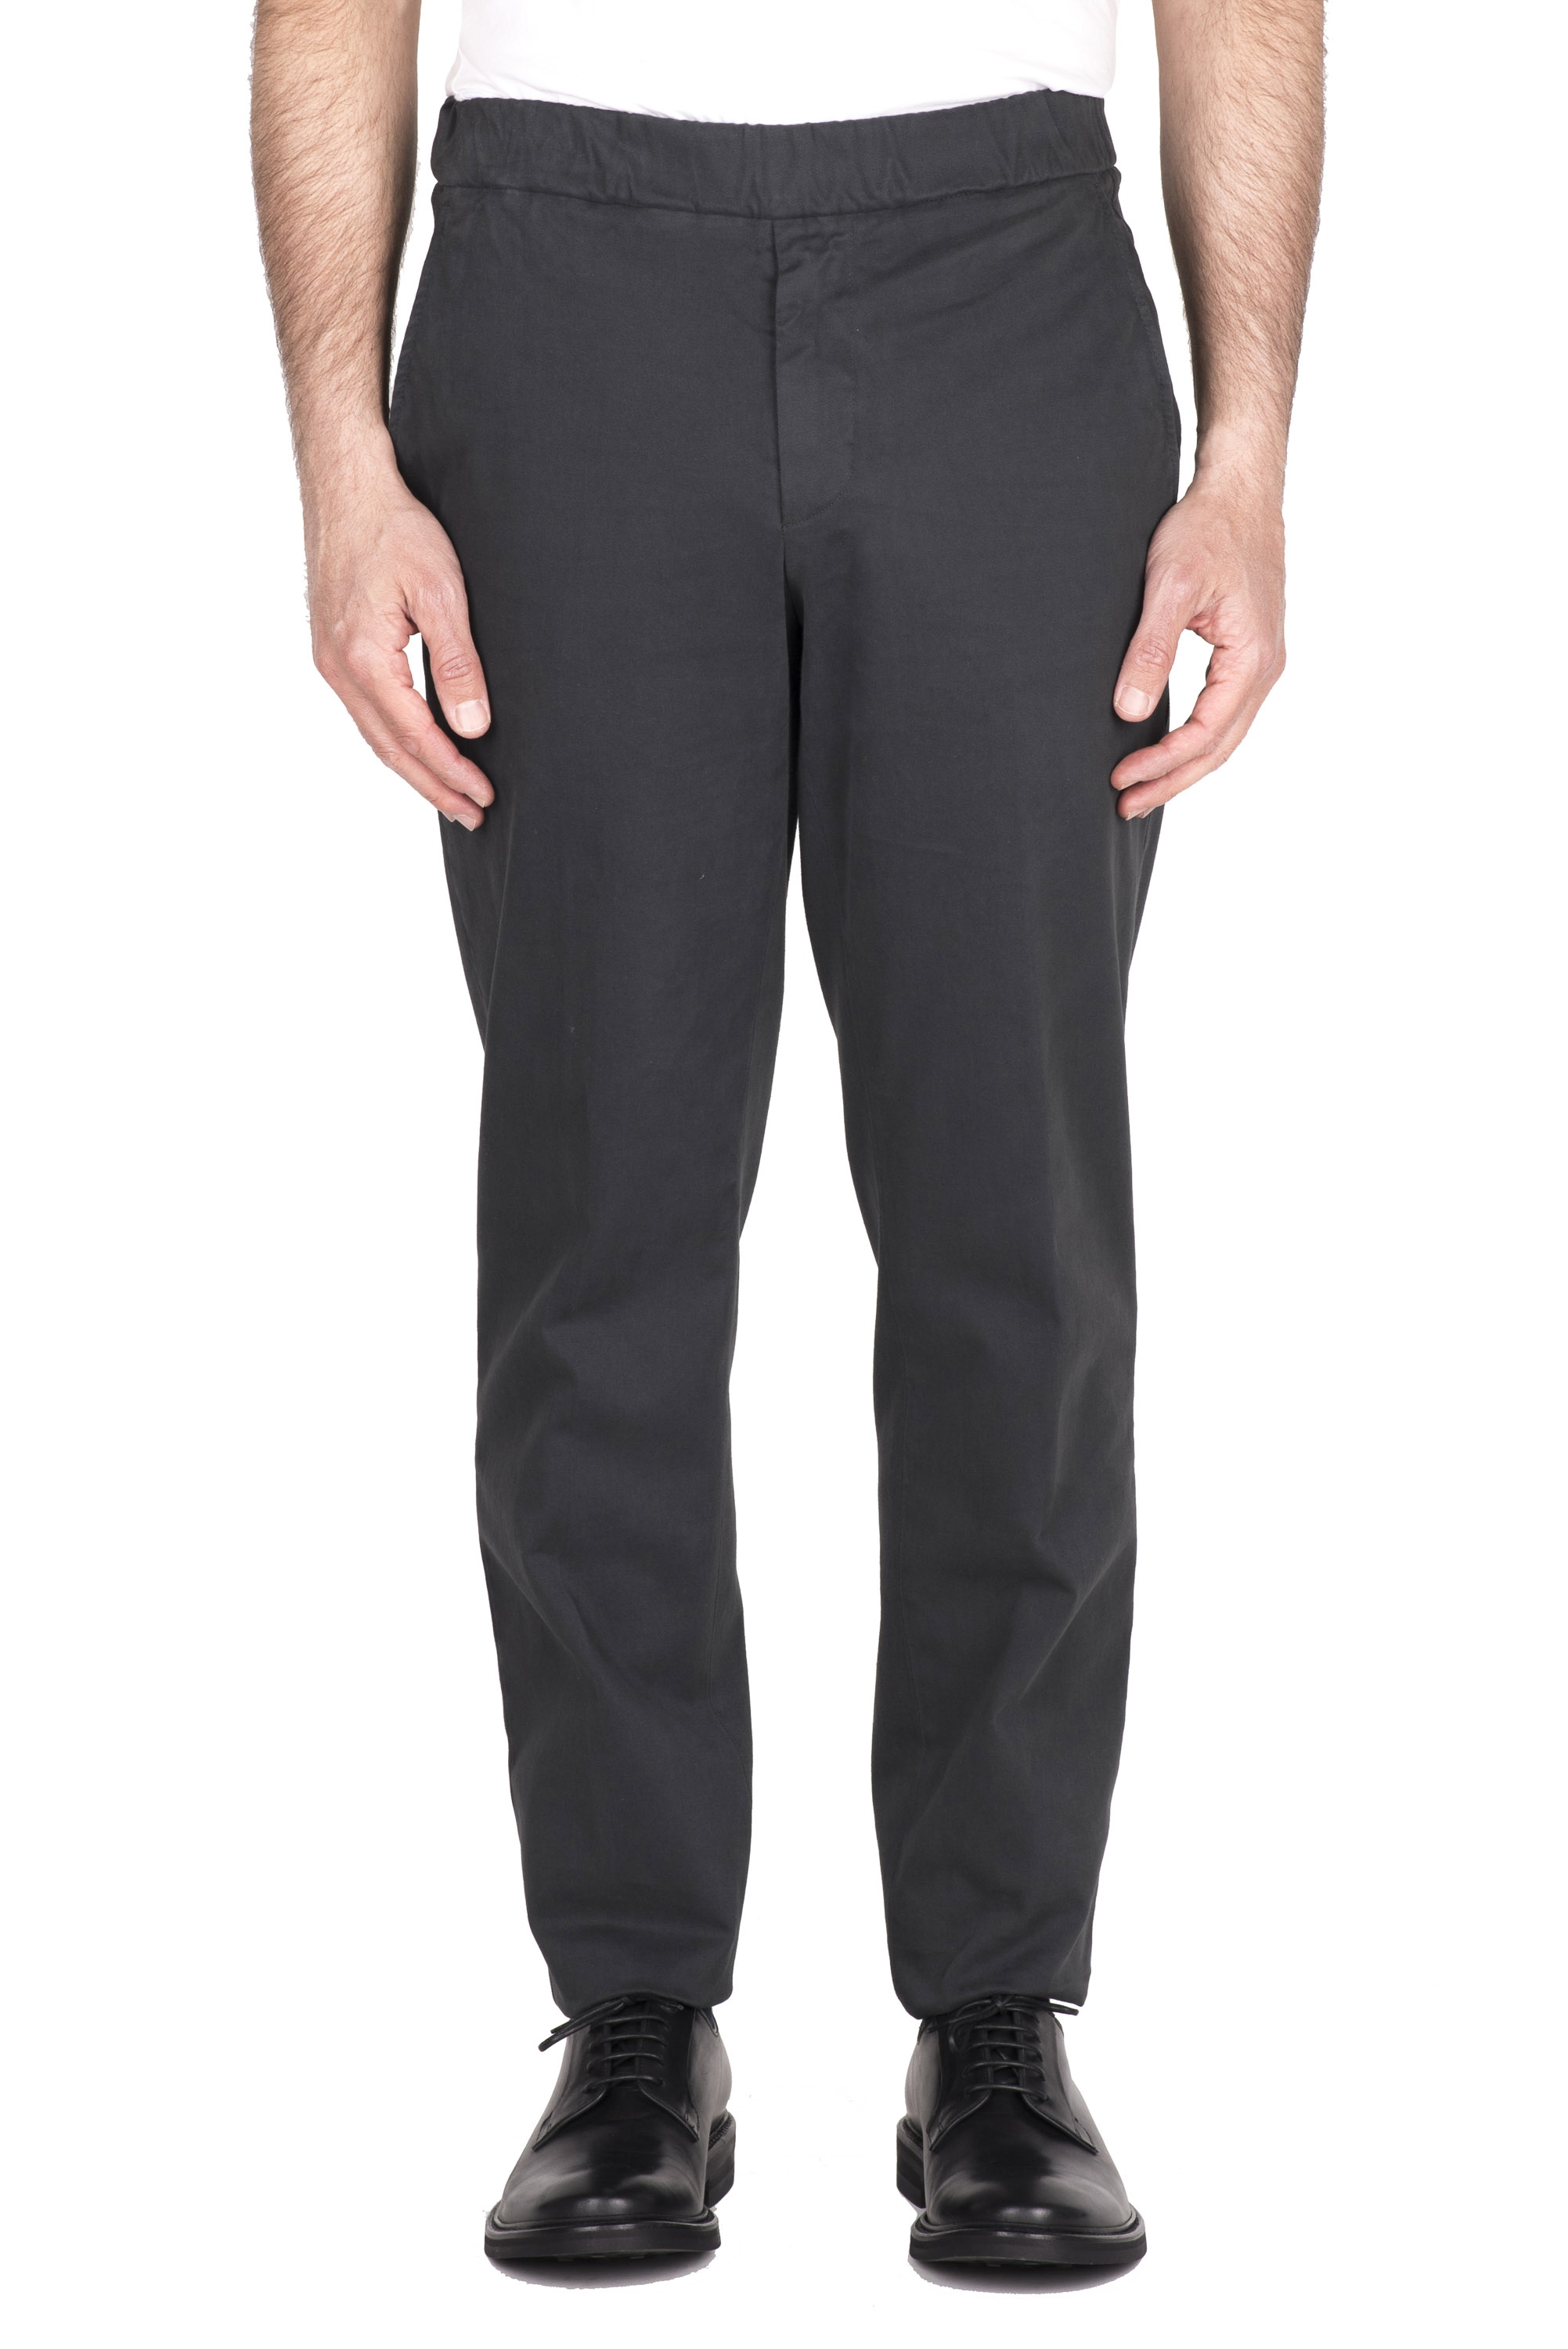 SBU 04623_23AW Pantalón confort de algodón elástico gris 01